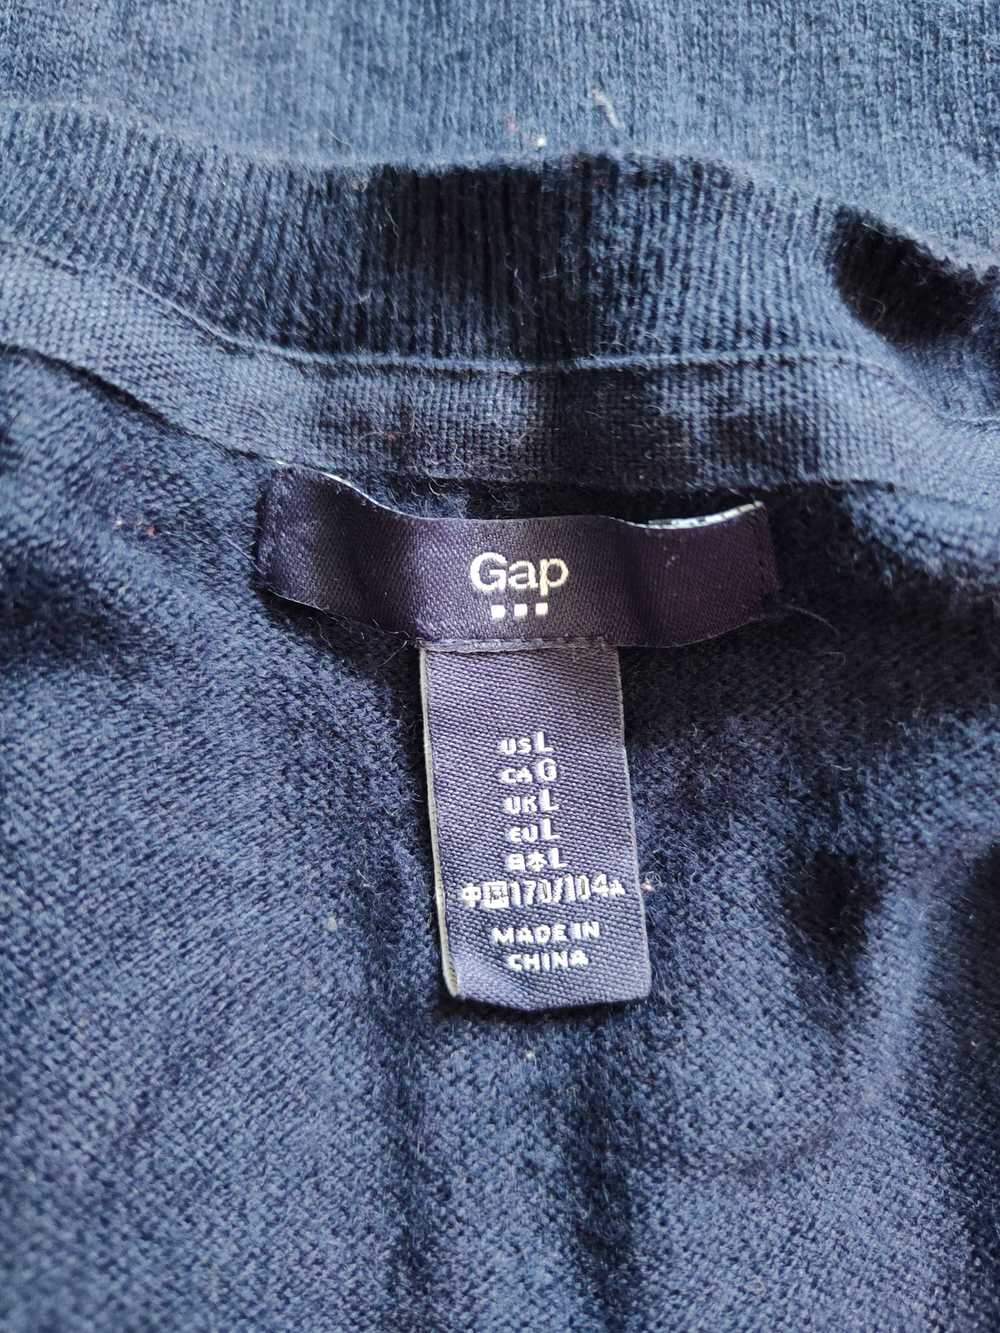 Cardigan × Gap × Homespun Knitwear GAP Dark Blue … - image 11